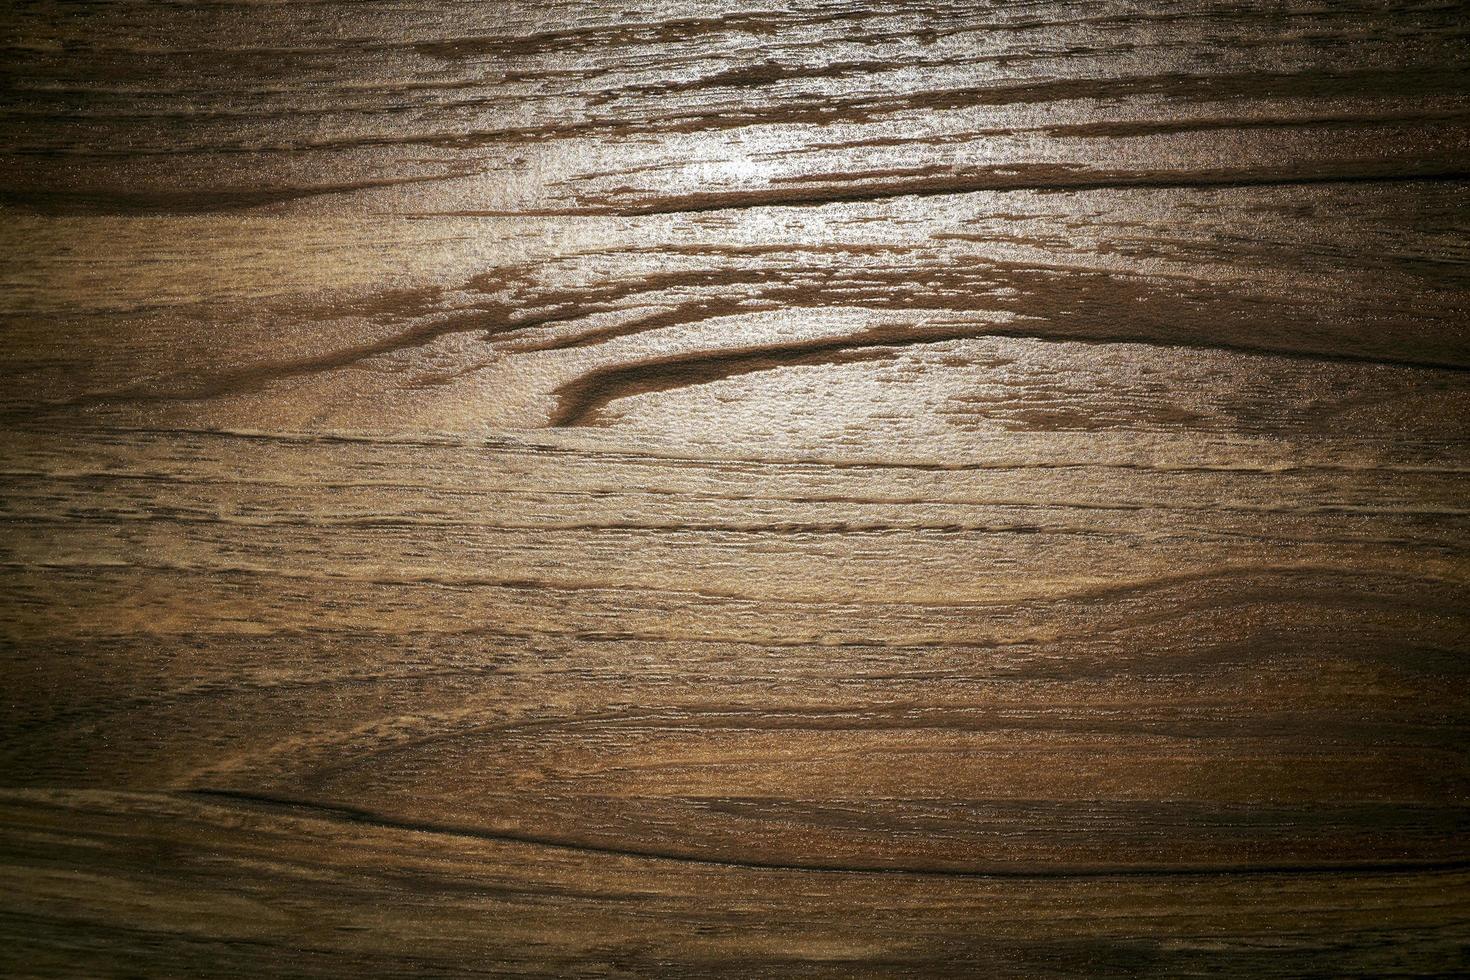 Hình nền sàn gỗ lạ mắt với màu sắc đa dạng. Thiết kế này mang lại cảm giác mới mẻ và sang trọng cho không gian của bạn.